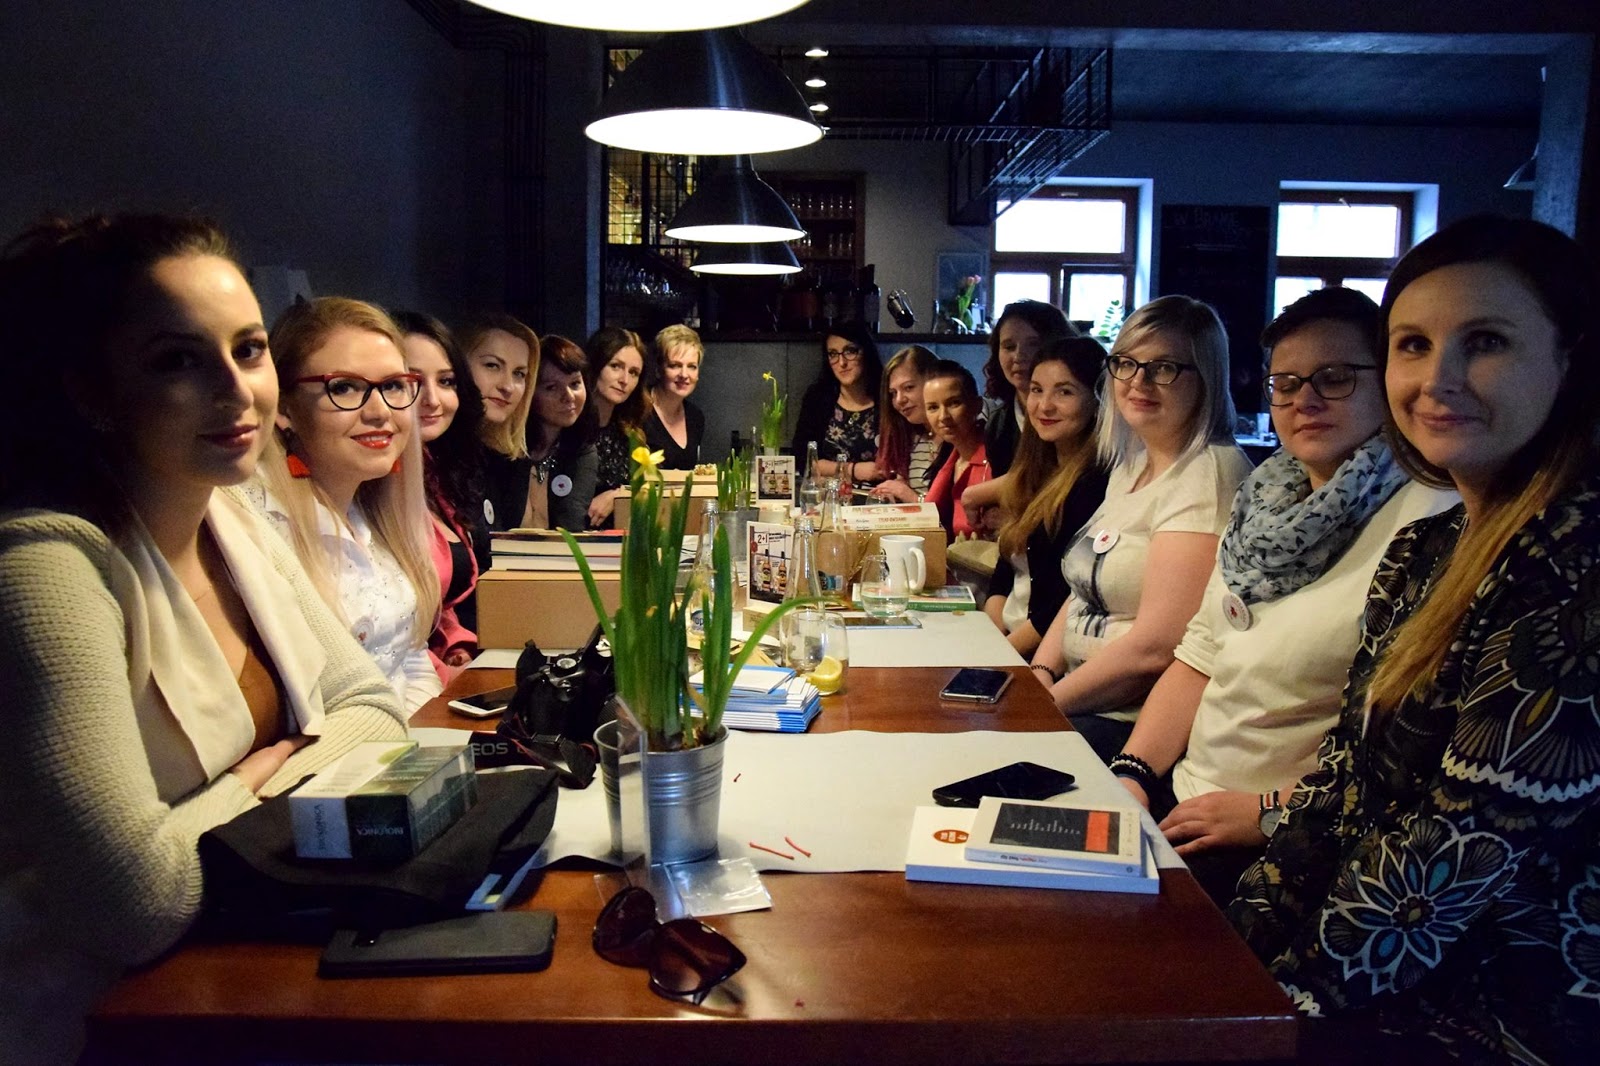 Z miłości do pasji - spotkanie blogerek w Lubartowie | RELACJA